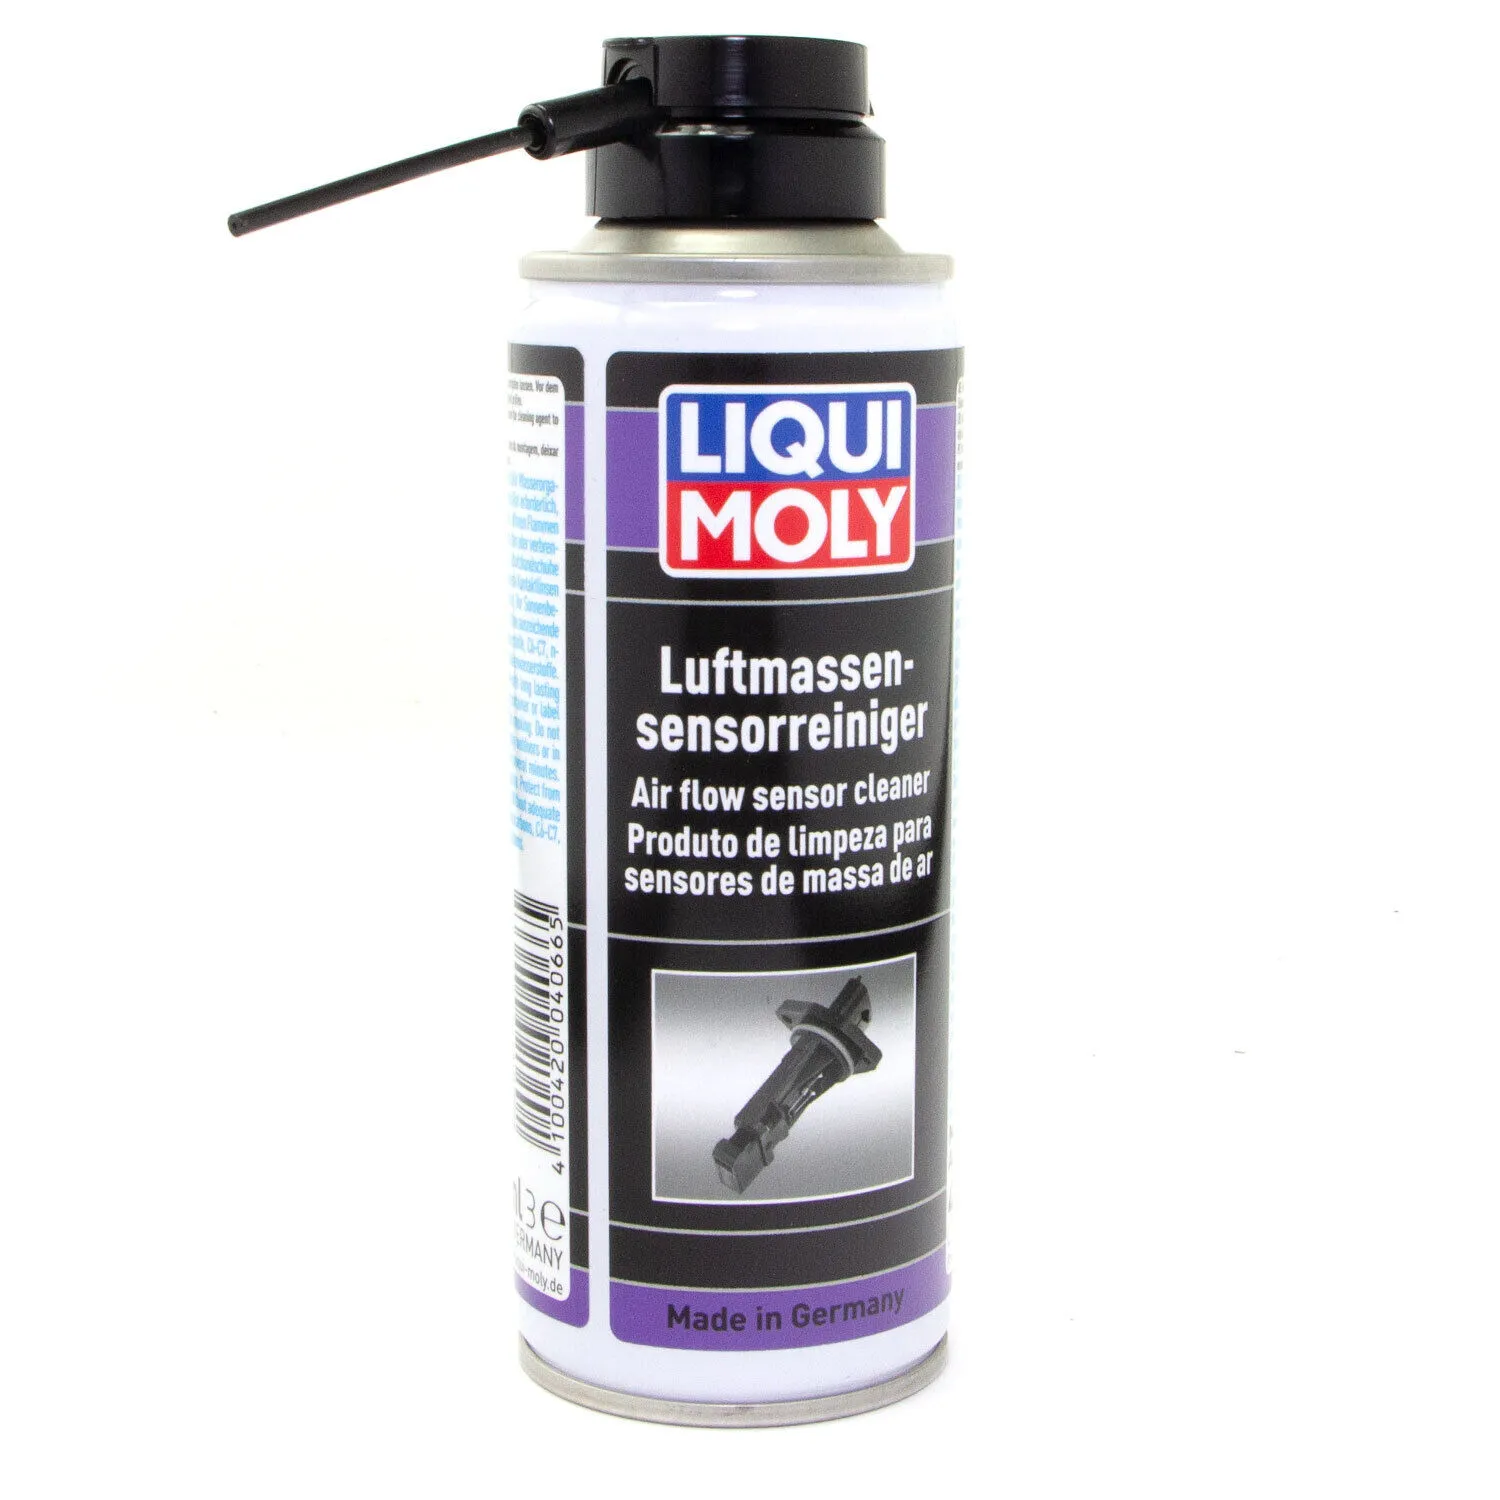 Liqui Moly 4066 Luftmassensensor-Reiniger 200 ml Luftmassensensor-Reiniger